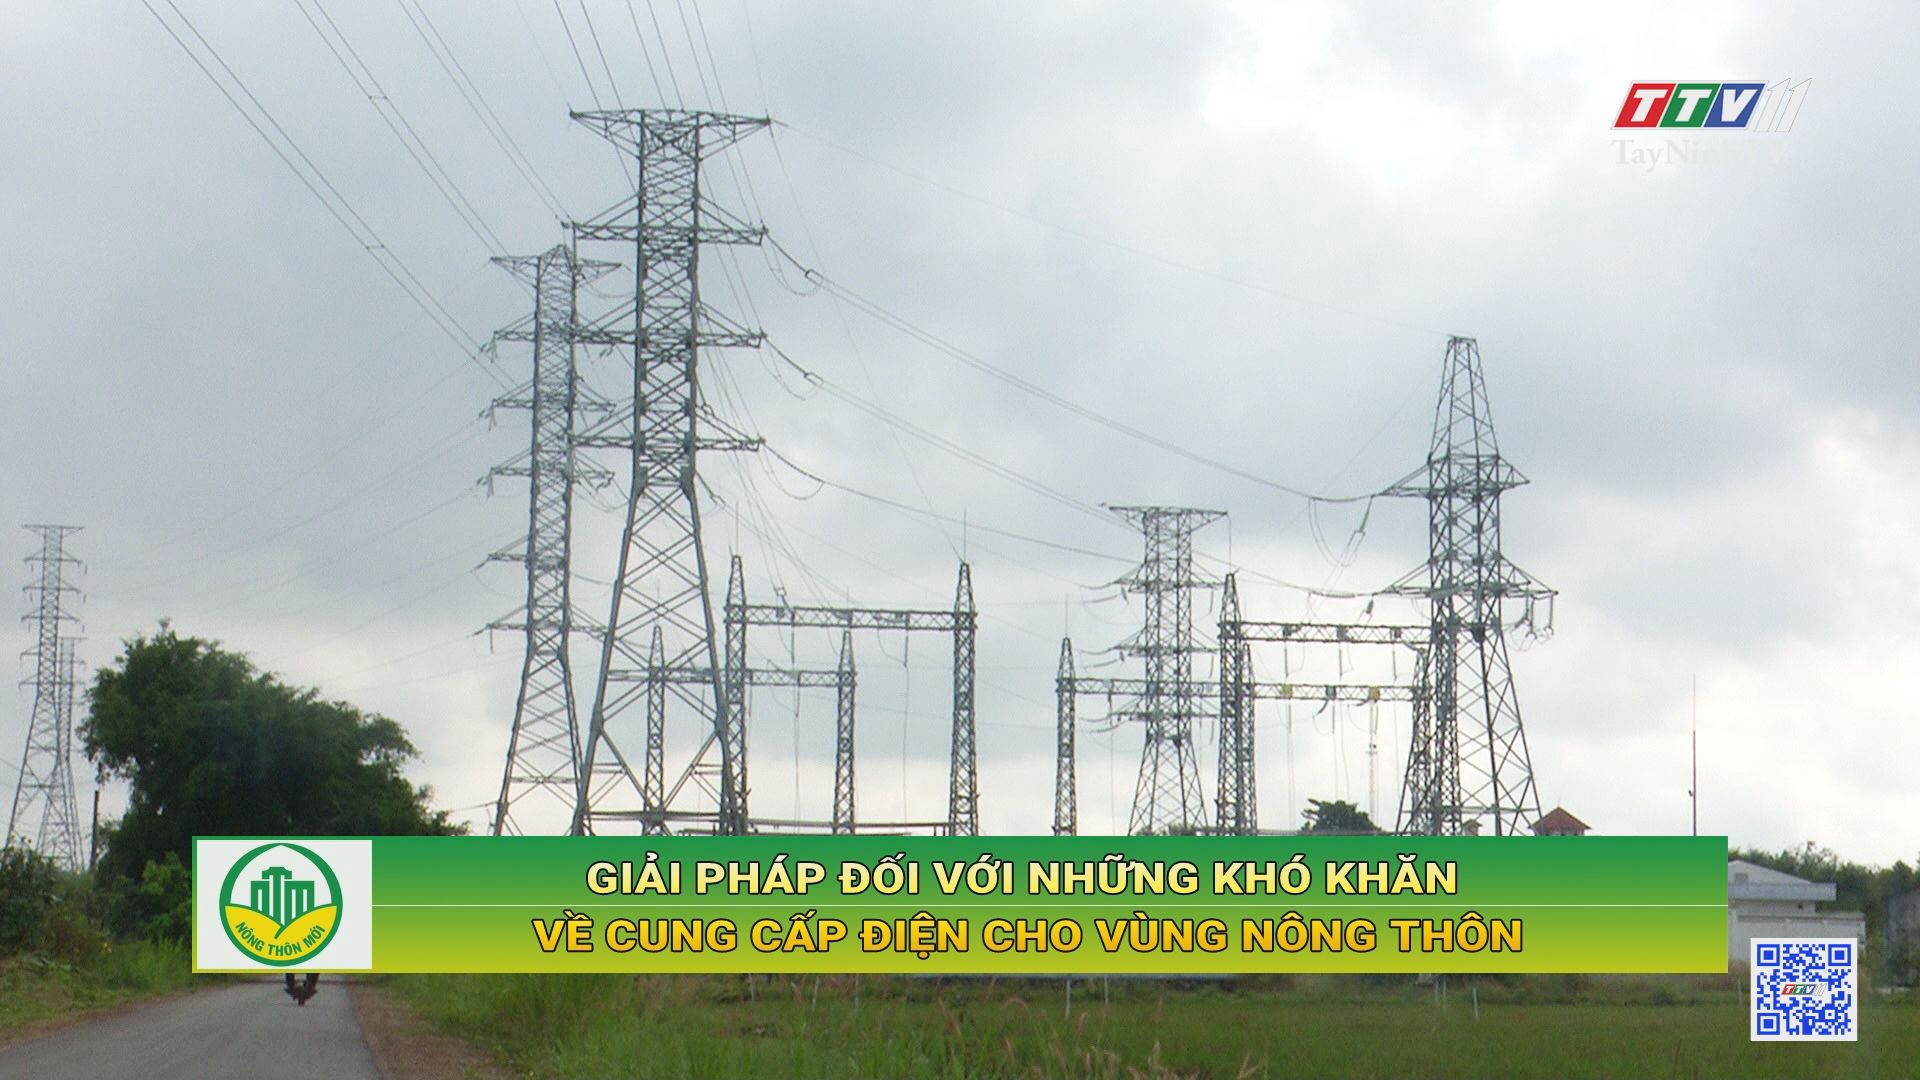 Giải pháp đối với những khó khăn về cung cấp điện cho vùng nông thôn | Tây Ninh xây dựng nông thôn mới | TayNinhTV